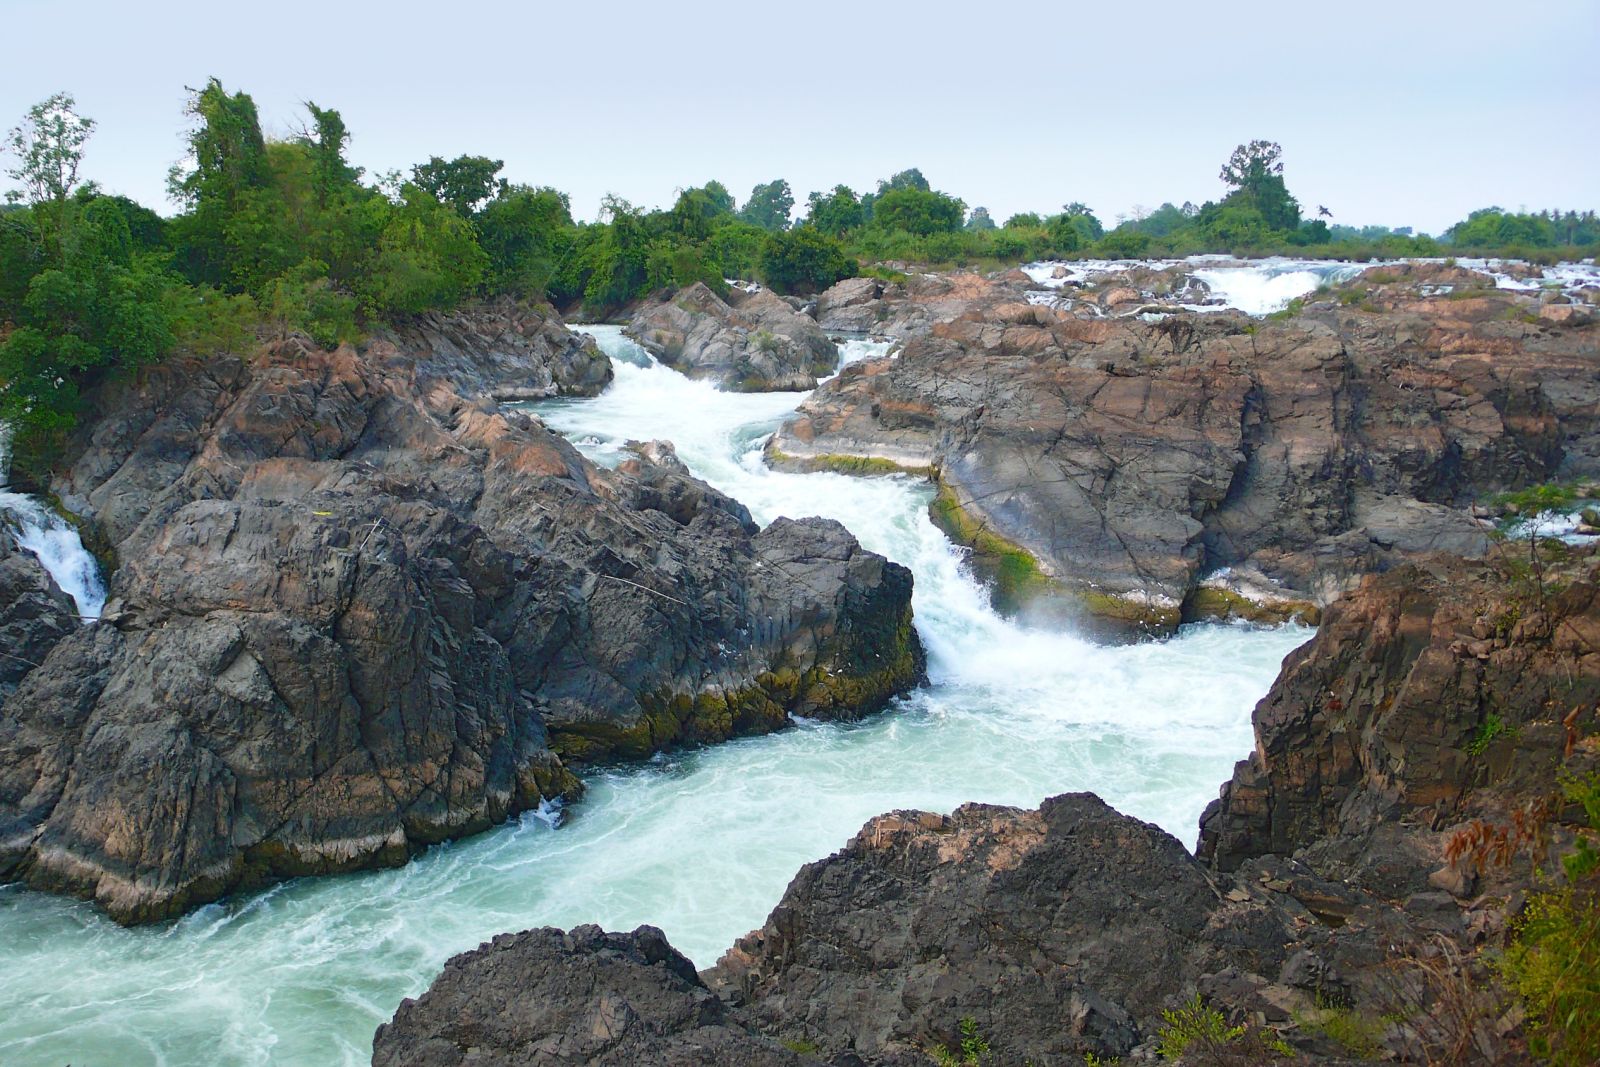 Blick auf einen Teil der ca. 15 m hohen Wasserfälle des Mekong im Bereich der Si Phan Don